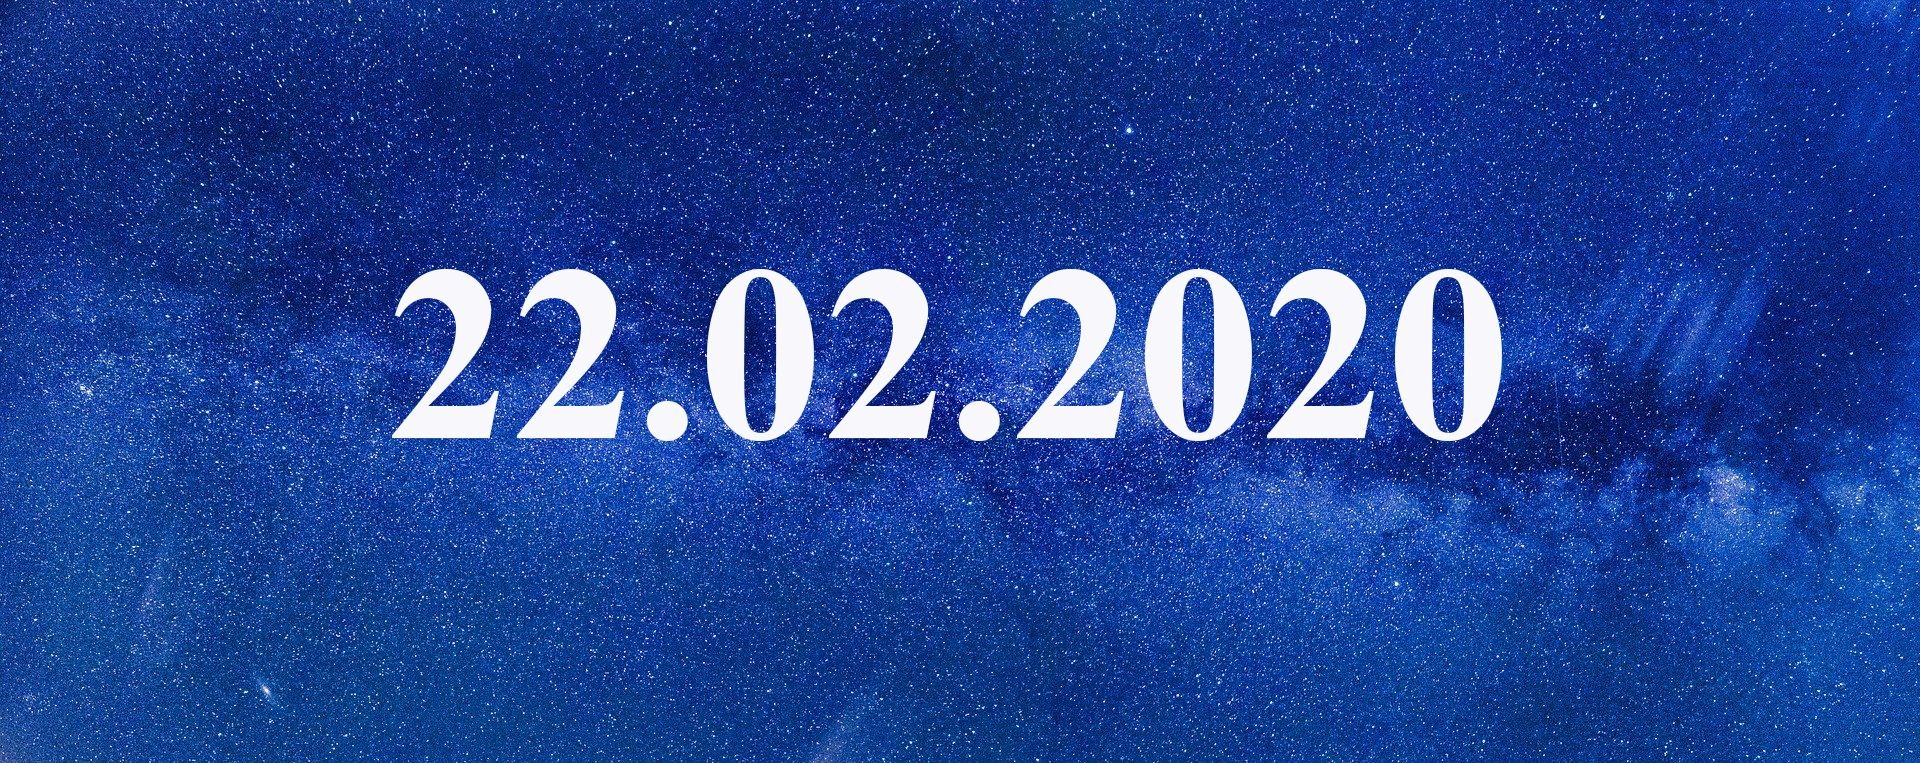 5 июня 2020 день. Зеркальная Дата 22.02.2022. Дата 22.02.2022. Дата красивыми цифрами. 02.02.2022 Мистическая Дата.